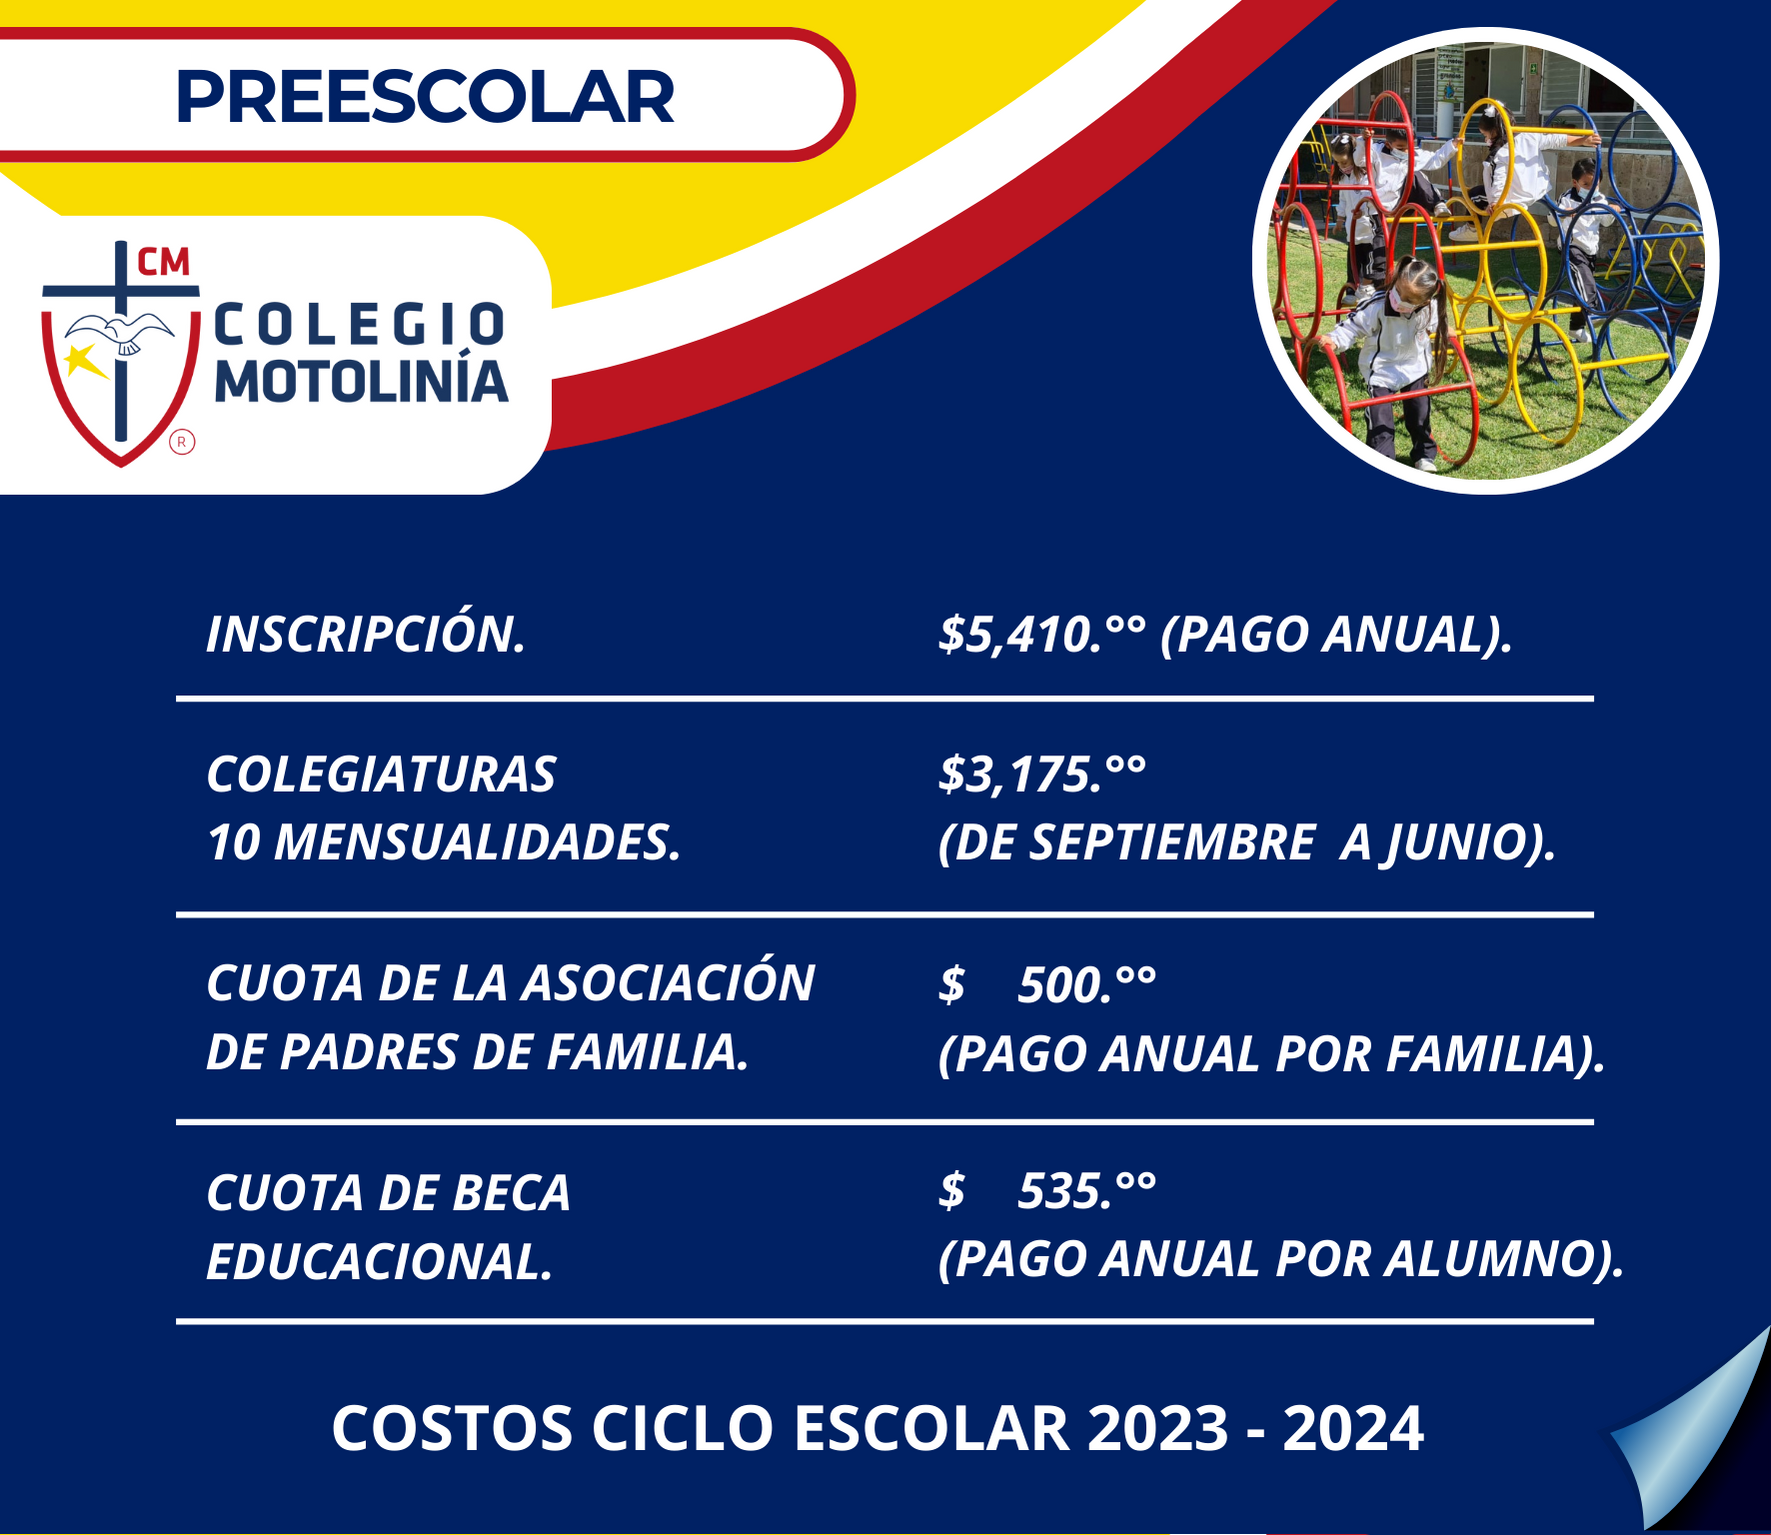 COSTOS PREESCOLAR CICLO 2023-2024